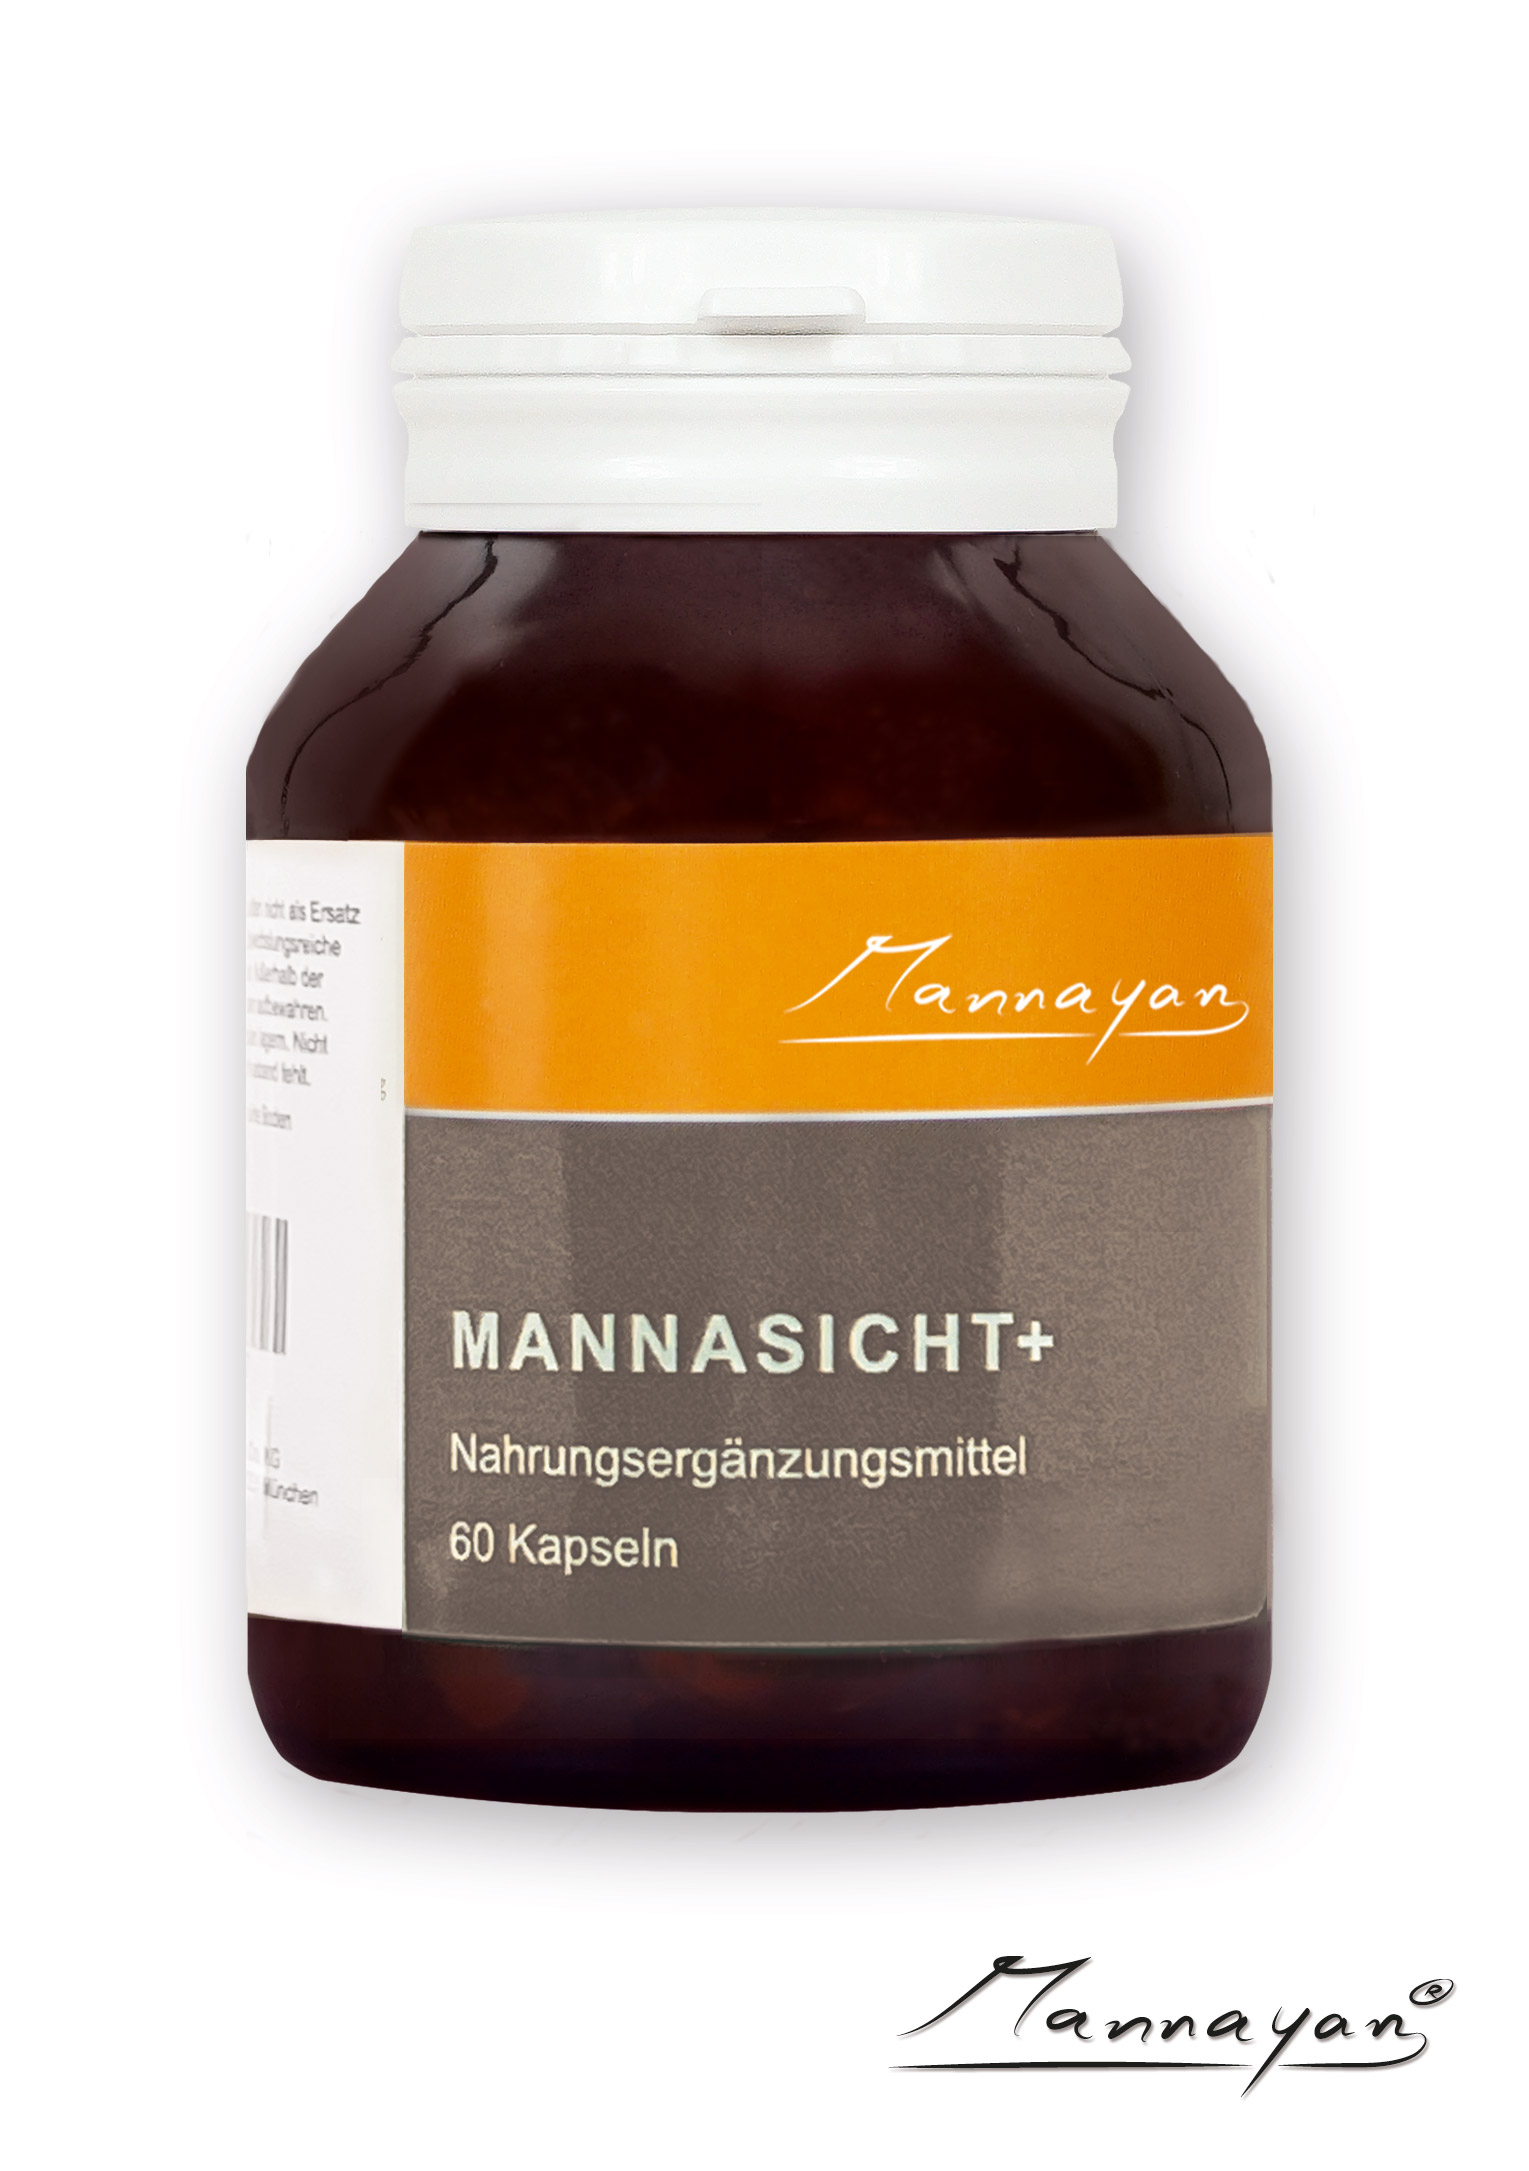 Mannasich+ von Mannayan